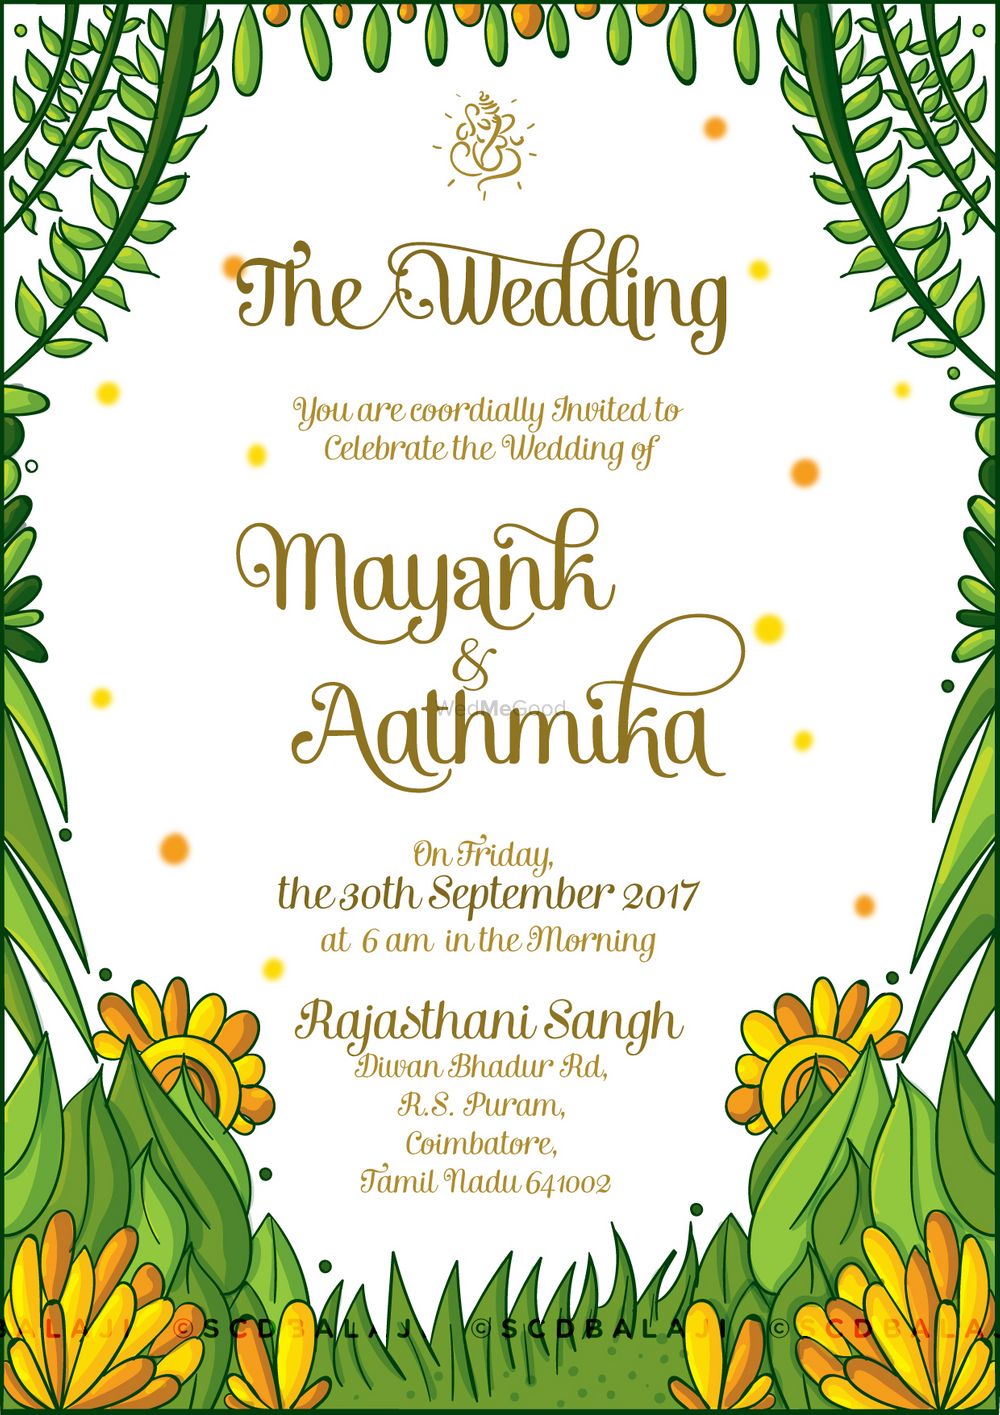 Photo From Maharashtrian (Marathi) Wedding Invite - By Atma Studios